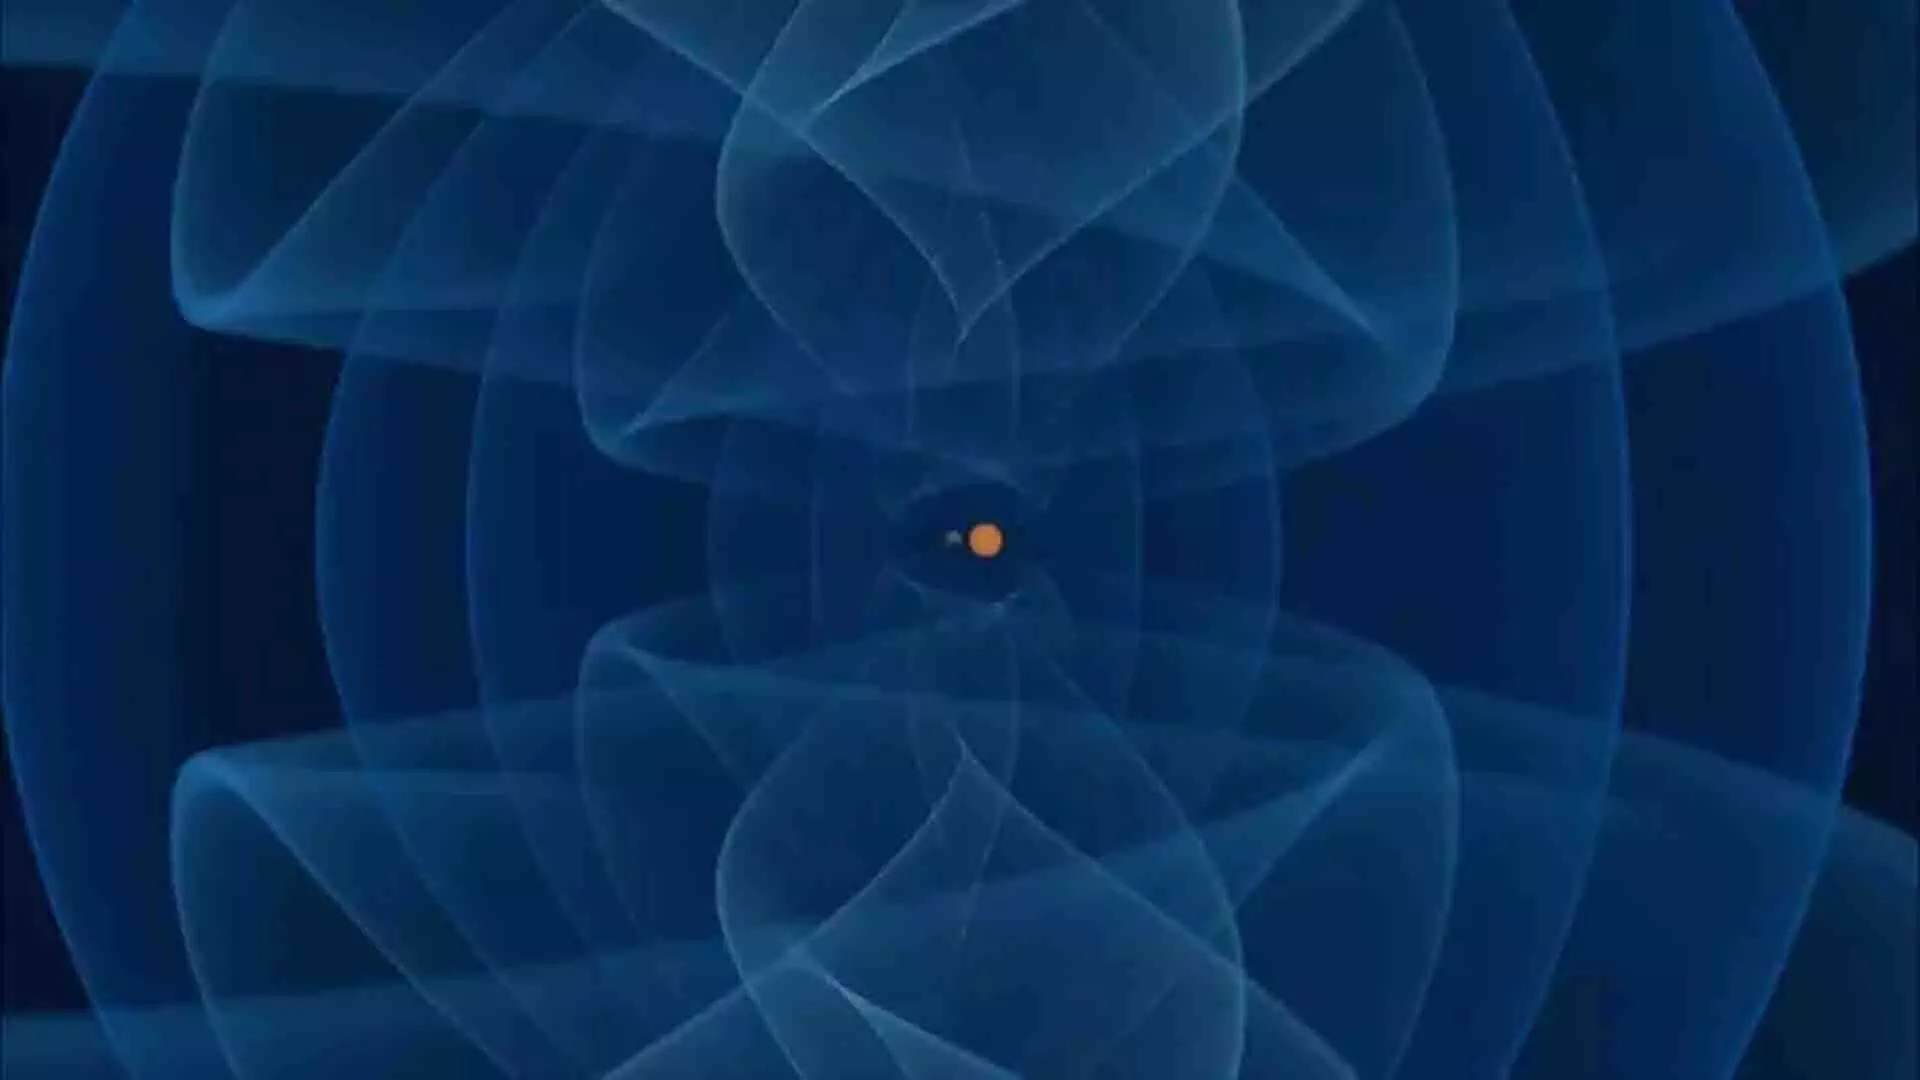 गुरुत्वाकर्षण तरंगें न्यूट्रॉन तारे और रहस्यमय वस्तु के बीच अपनी तरह के पहले विलय को करती हैं प्रकट